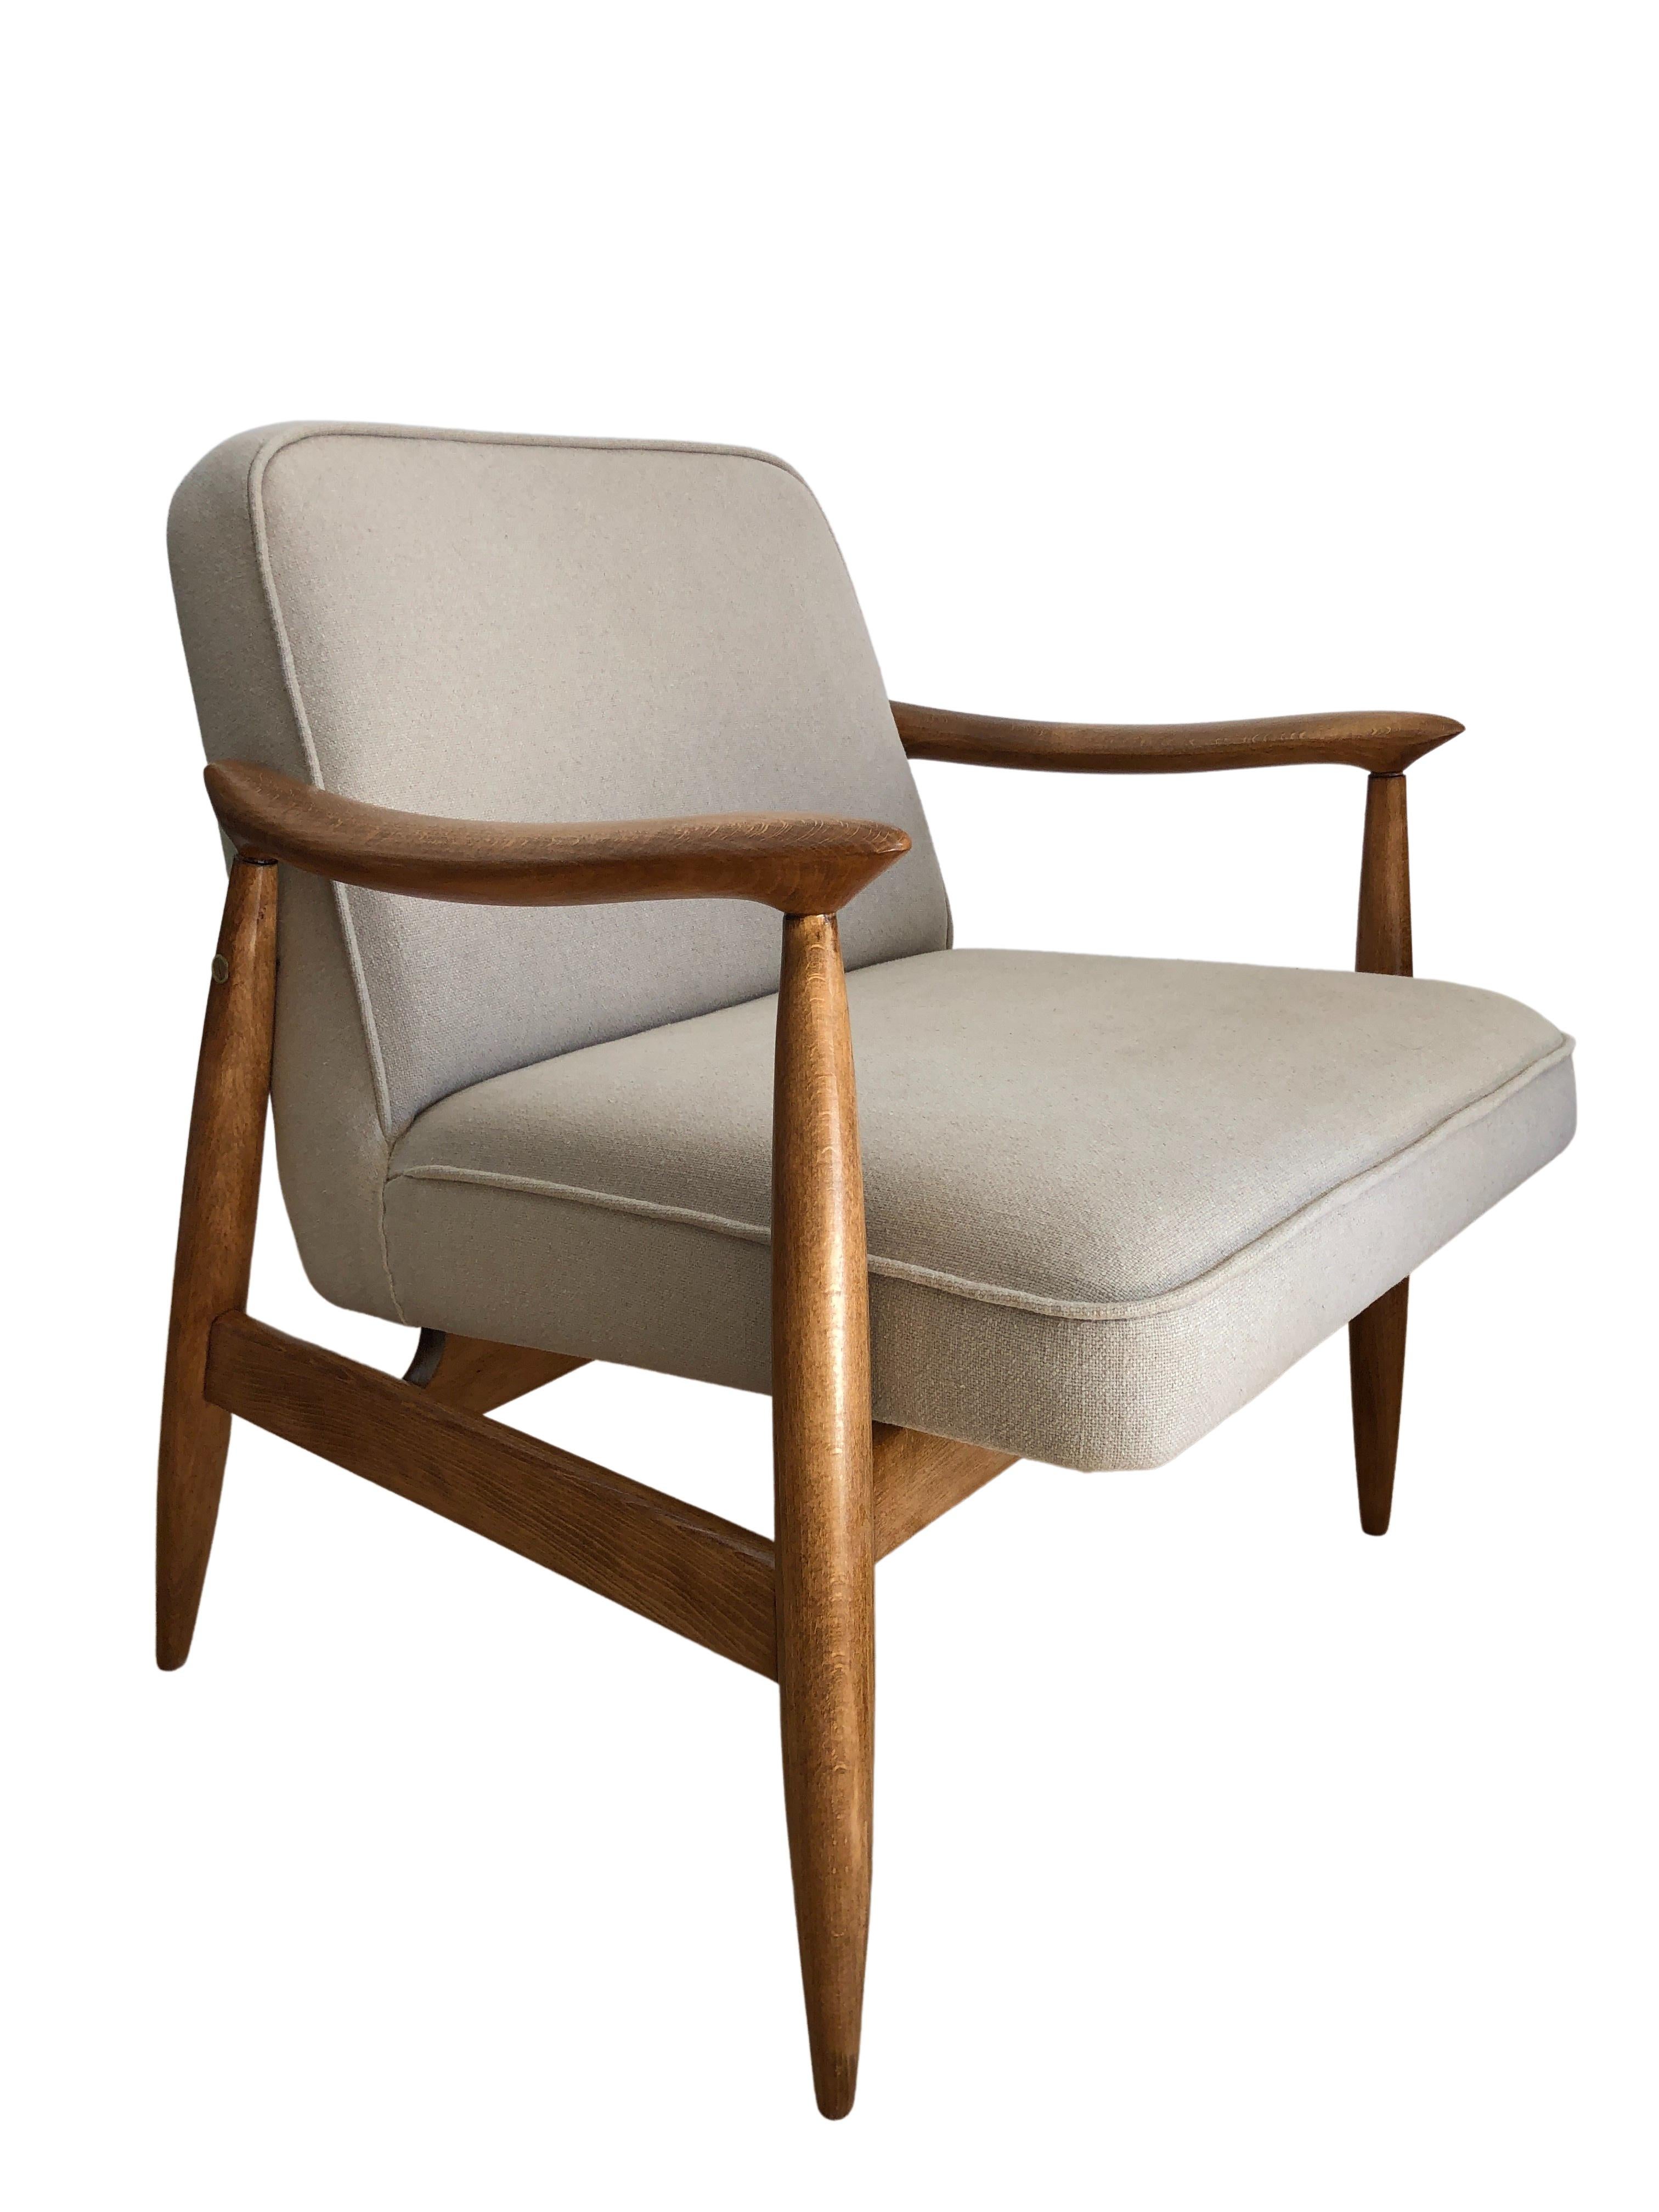 Eine der Ikonen des polnischen Designs aus der Mitte des Jahrhunderts, das Sesselmodell GFM-87, entworfen von Juliusz Kedziorek, hergestellt von Goscicinskie Fabryki Mebli in Polen in den 1960er Jahren. 

Die Struktur ist aus Buchenholz gefertigt